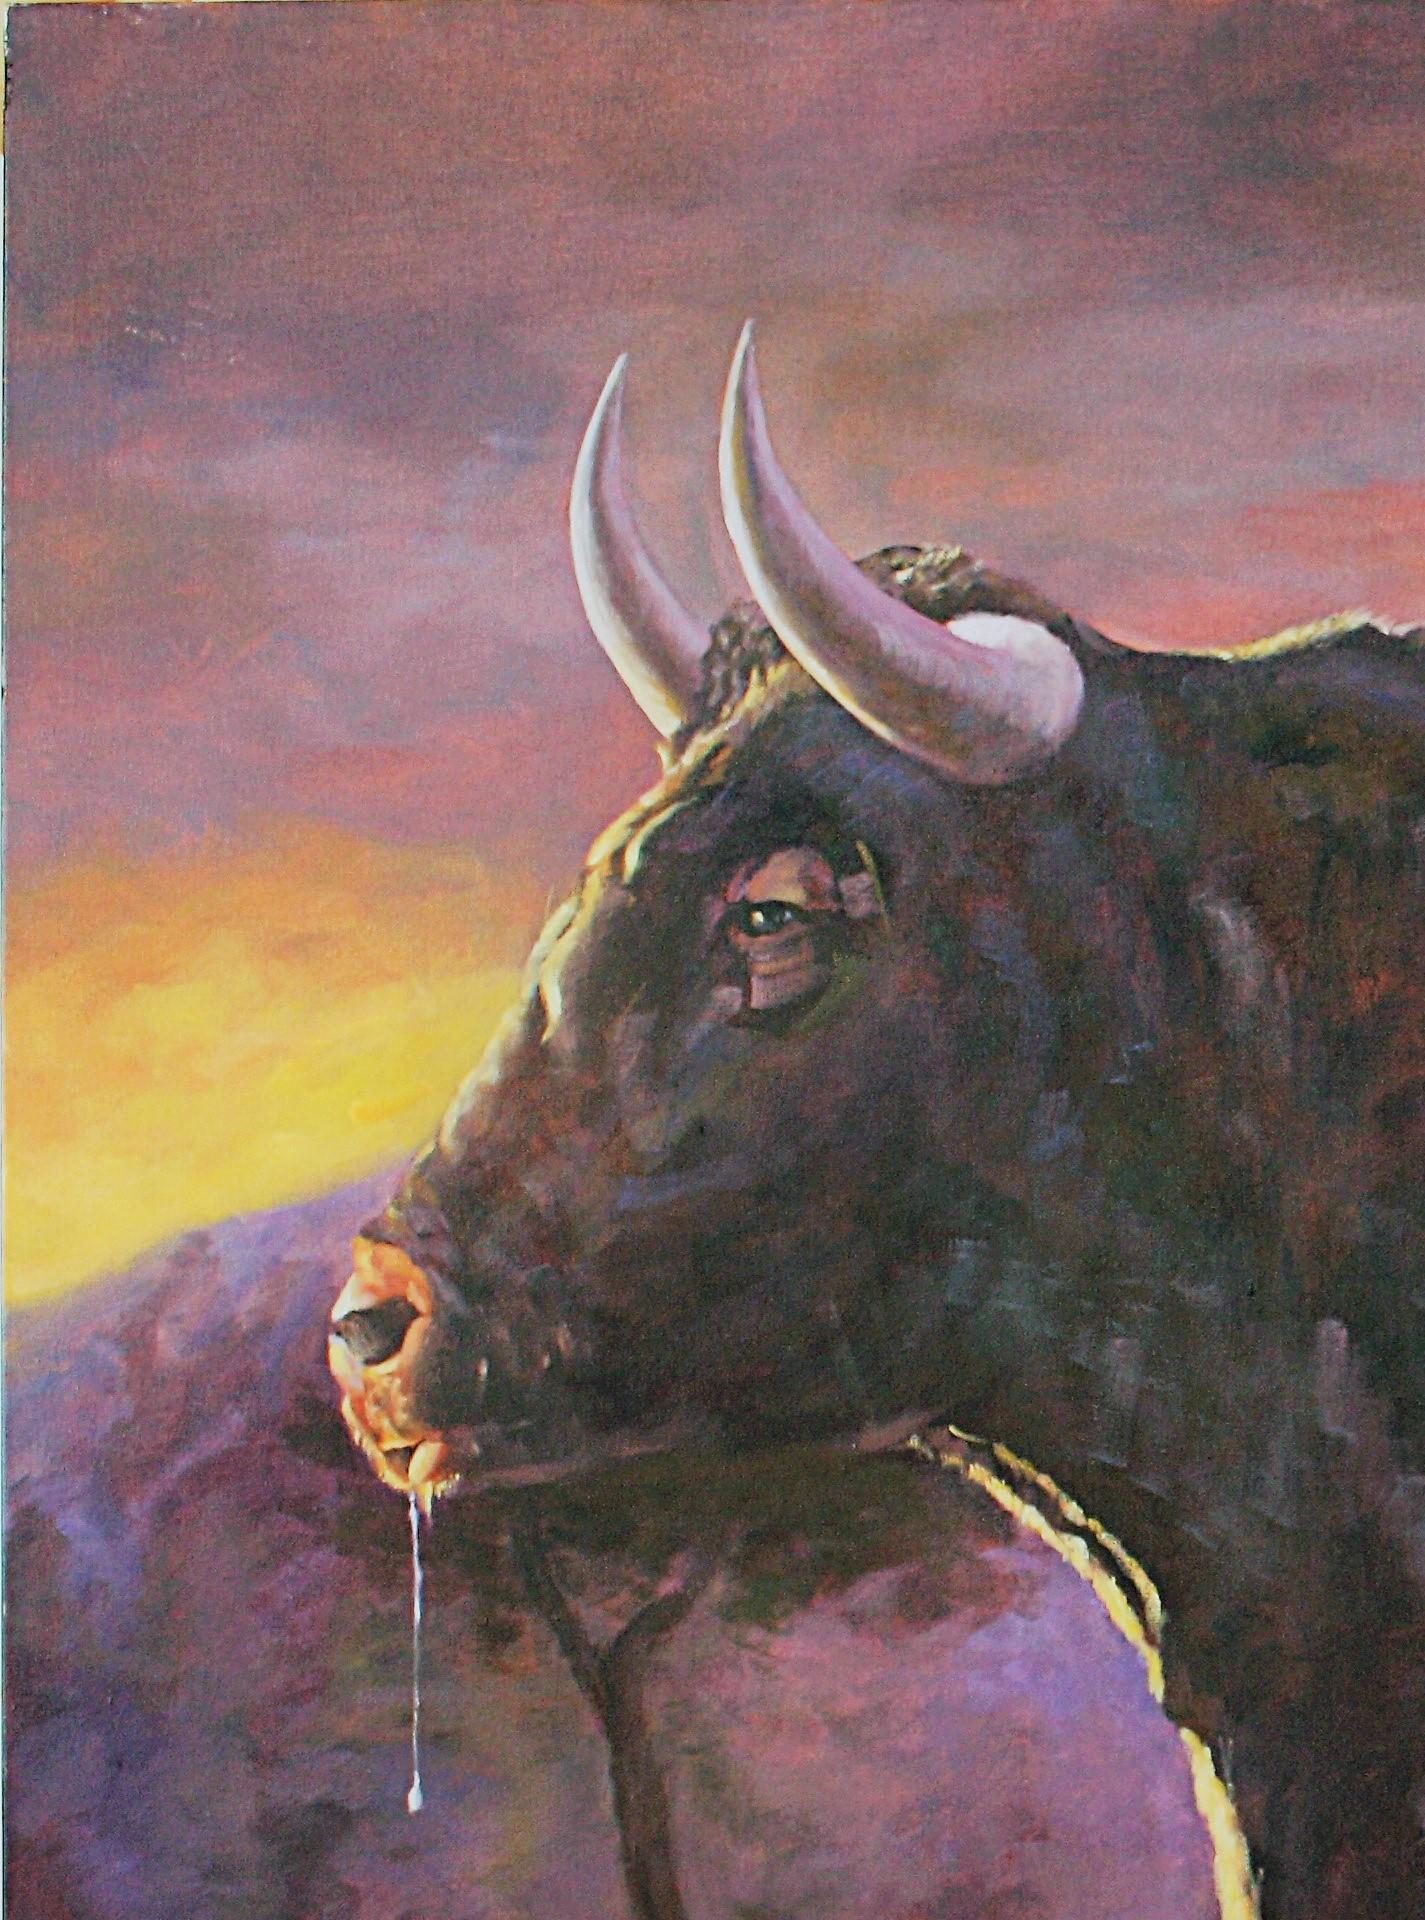 Toro al amanecer - Realist Painting by José Luis Pagador Ponce